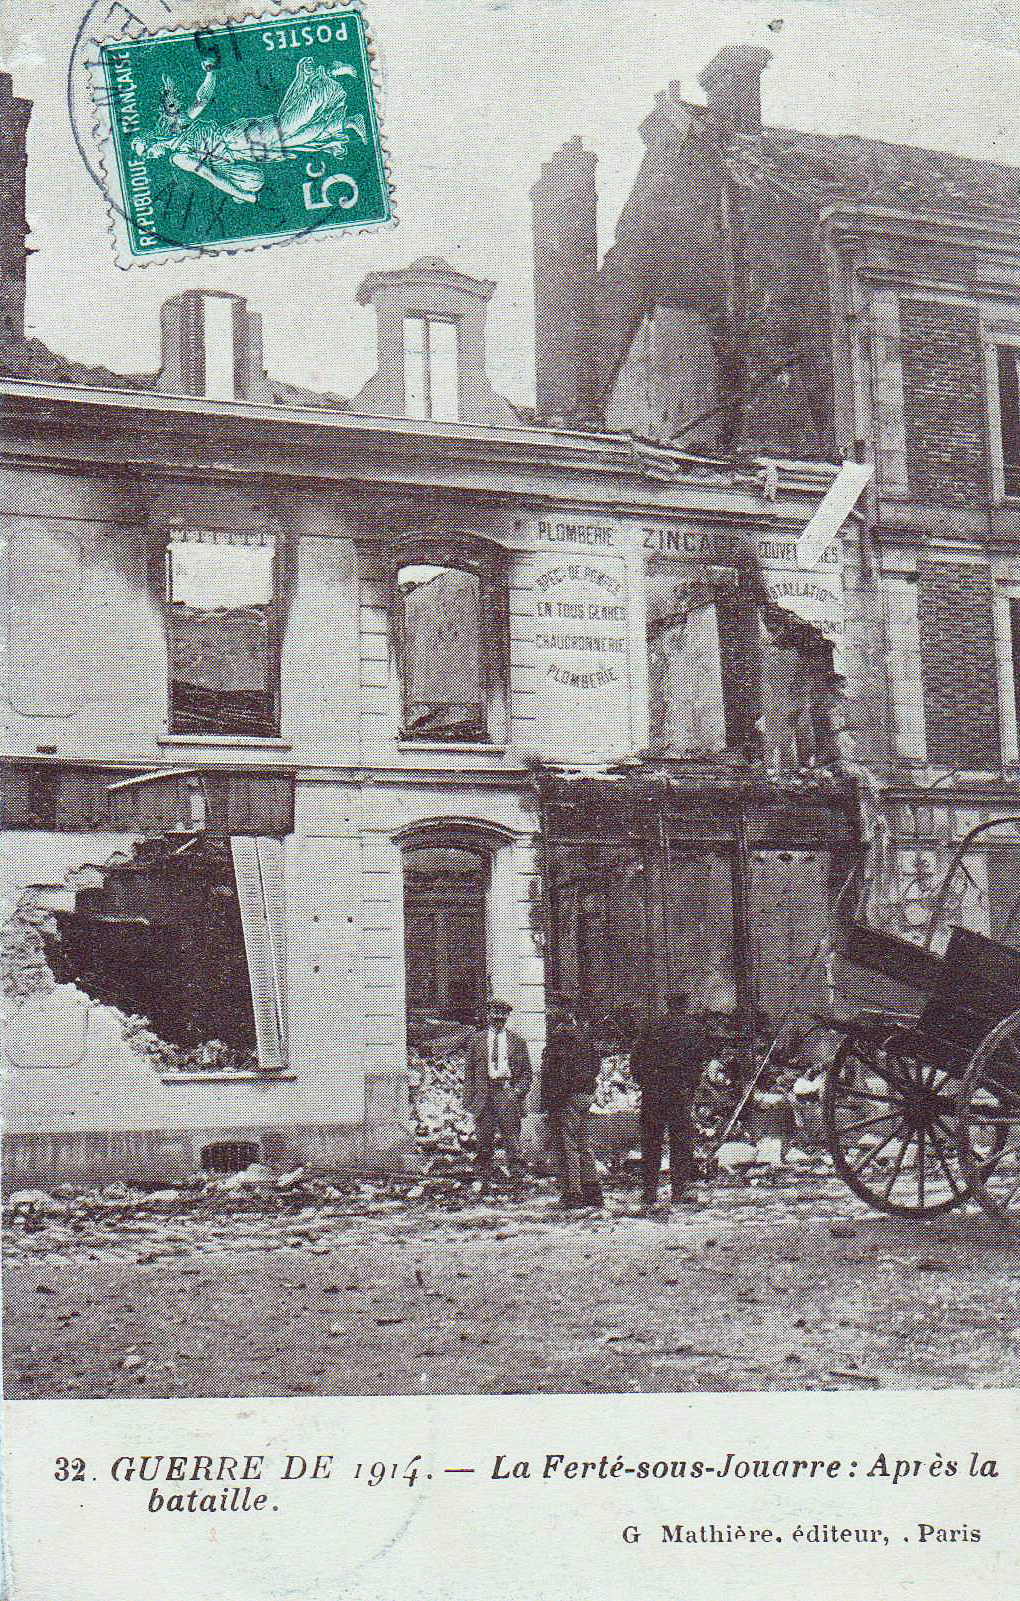 La Ferté-sous-Jouarre après la bataille de 1914